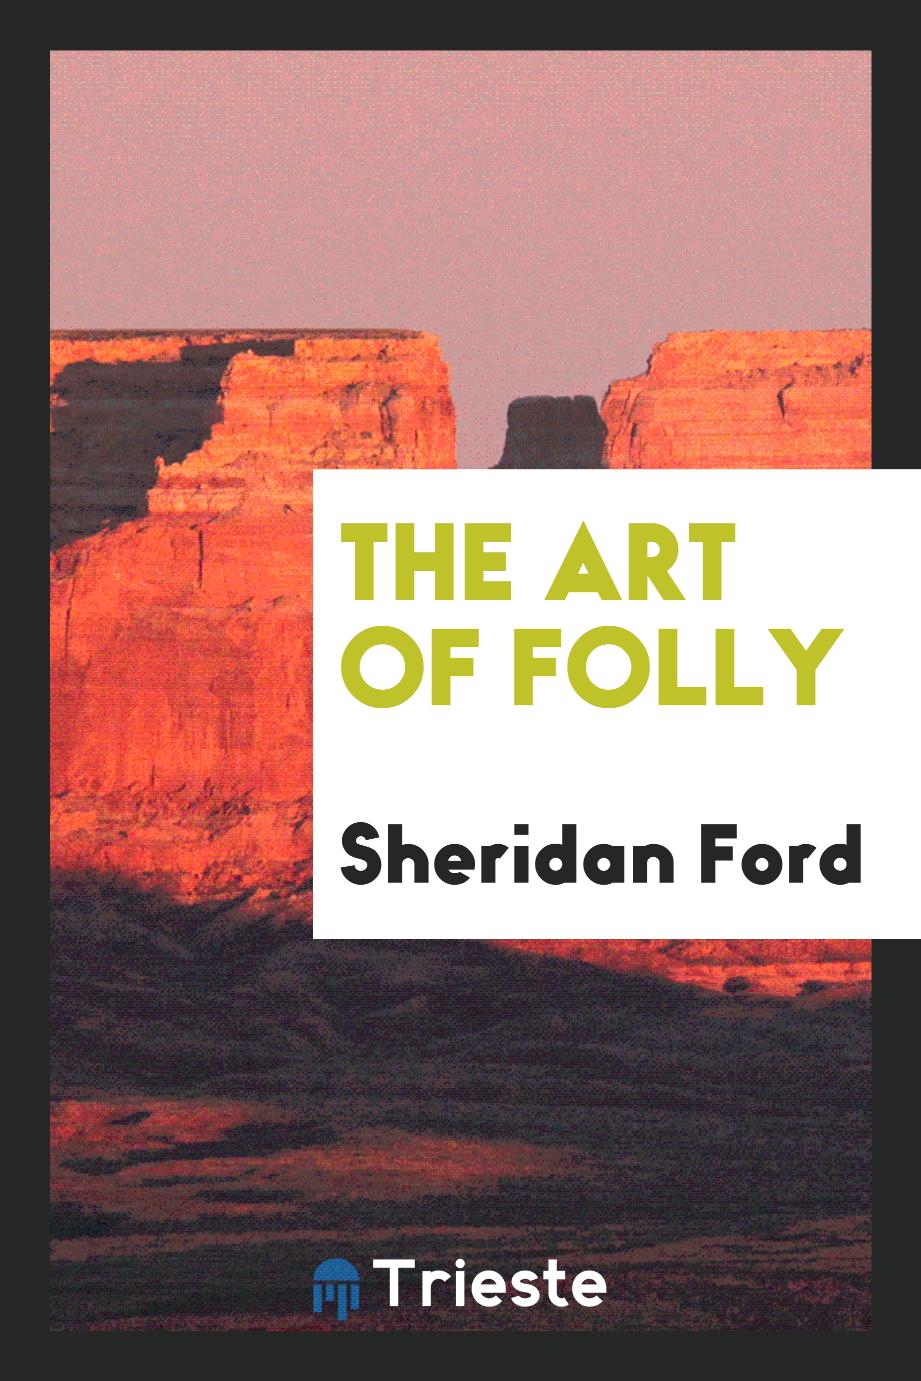 The Art of Folly